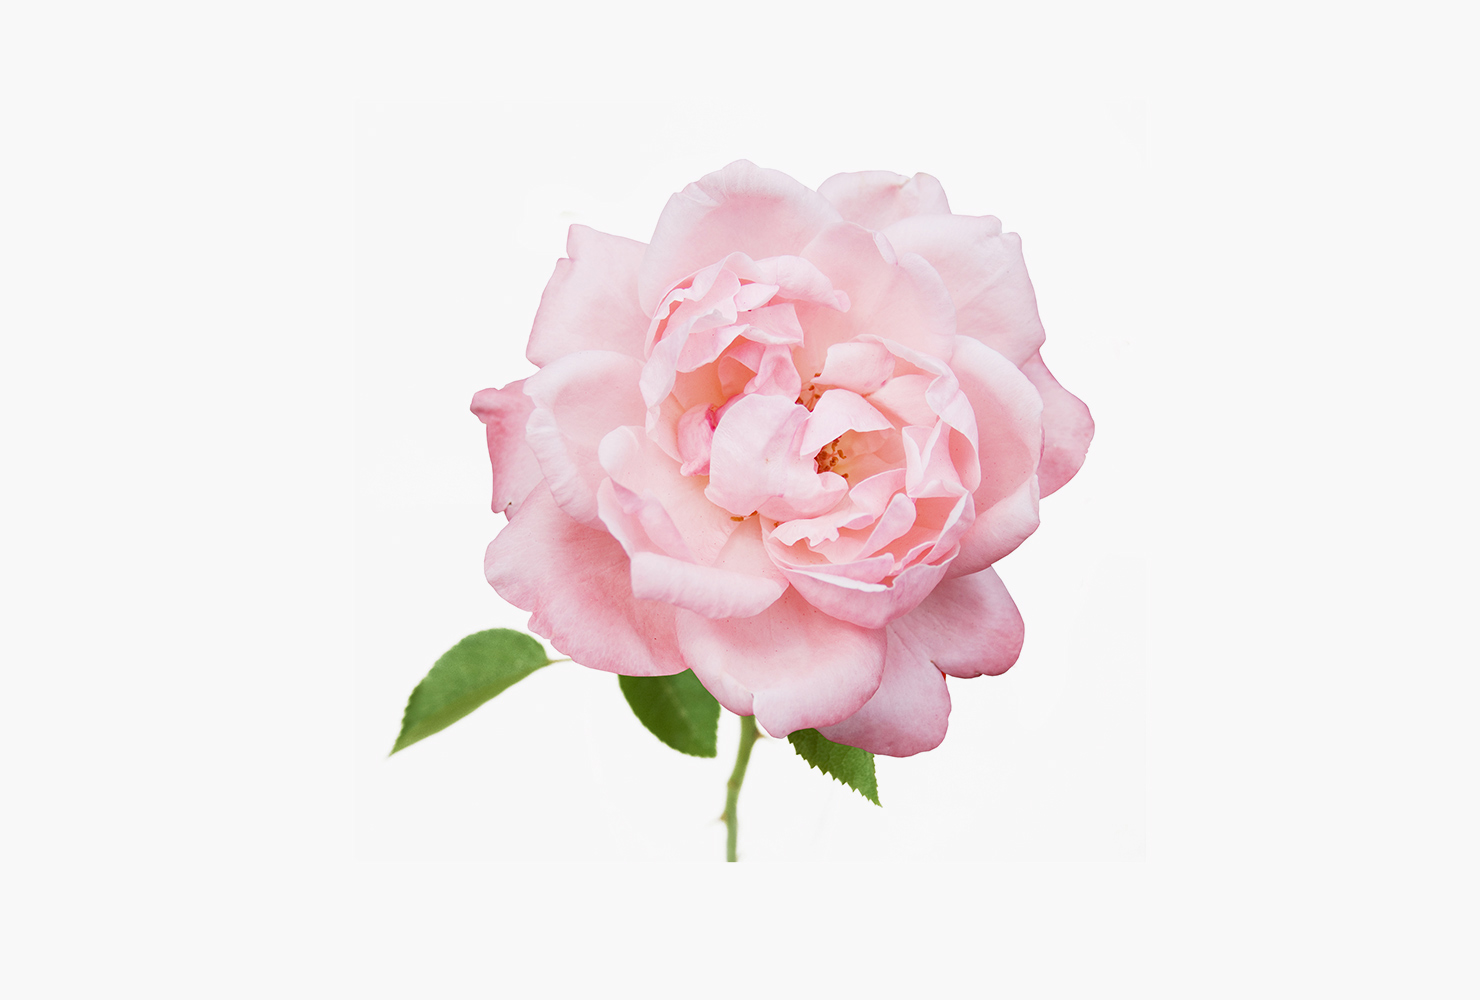 A pink garden rose. 